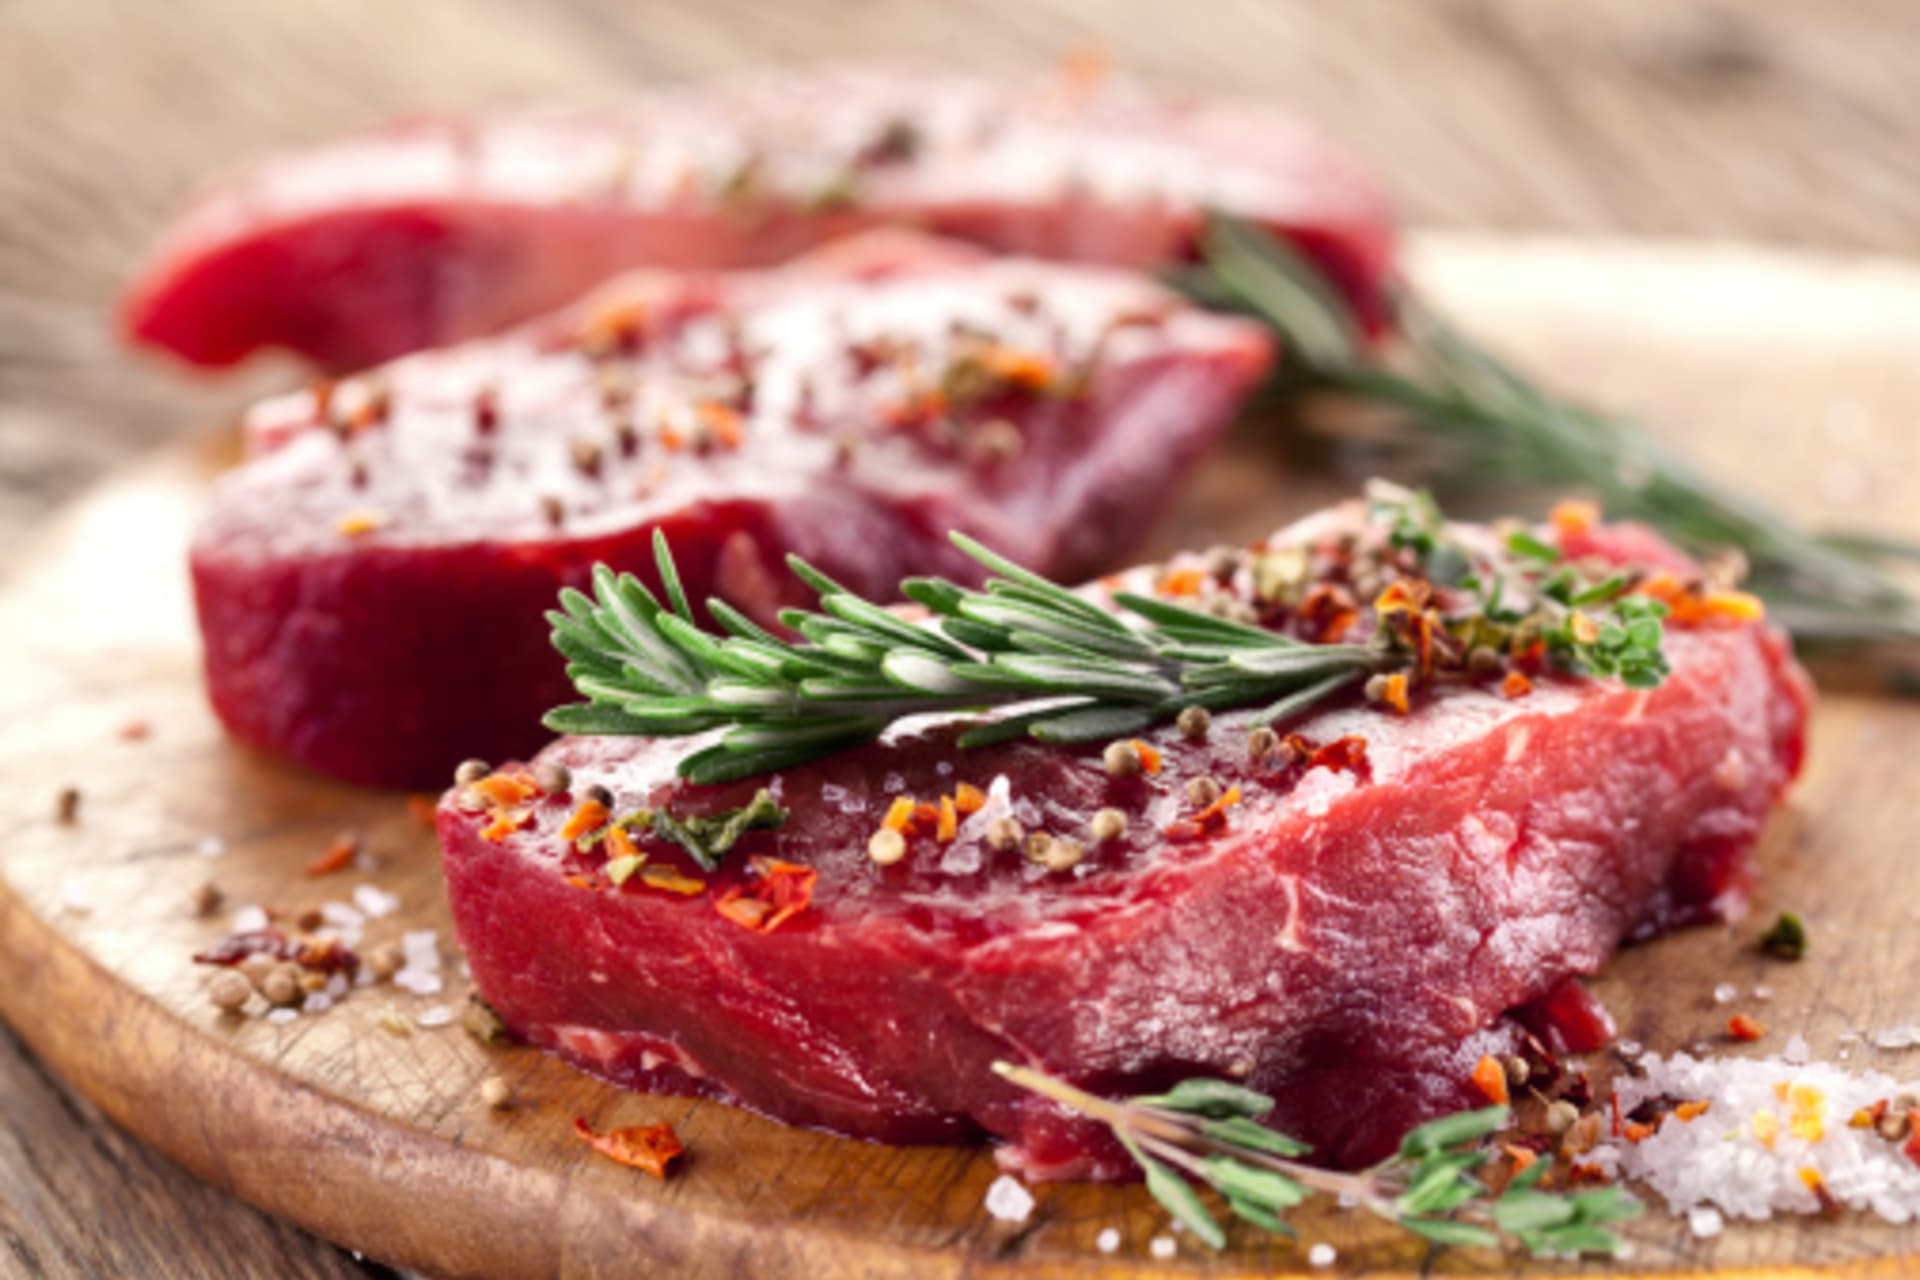 Libové hovězí maso je vhodným zdrojem bílkovin.